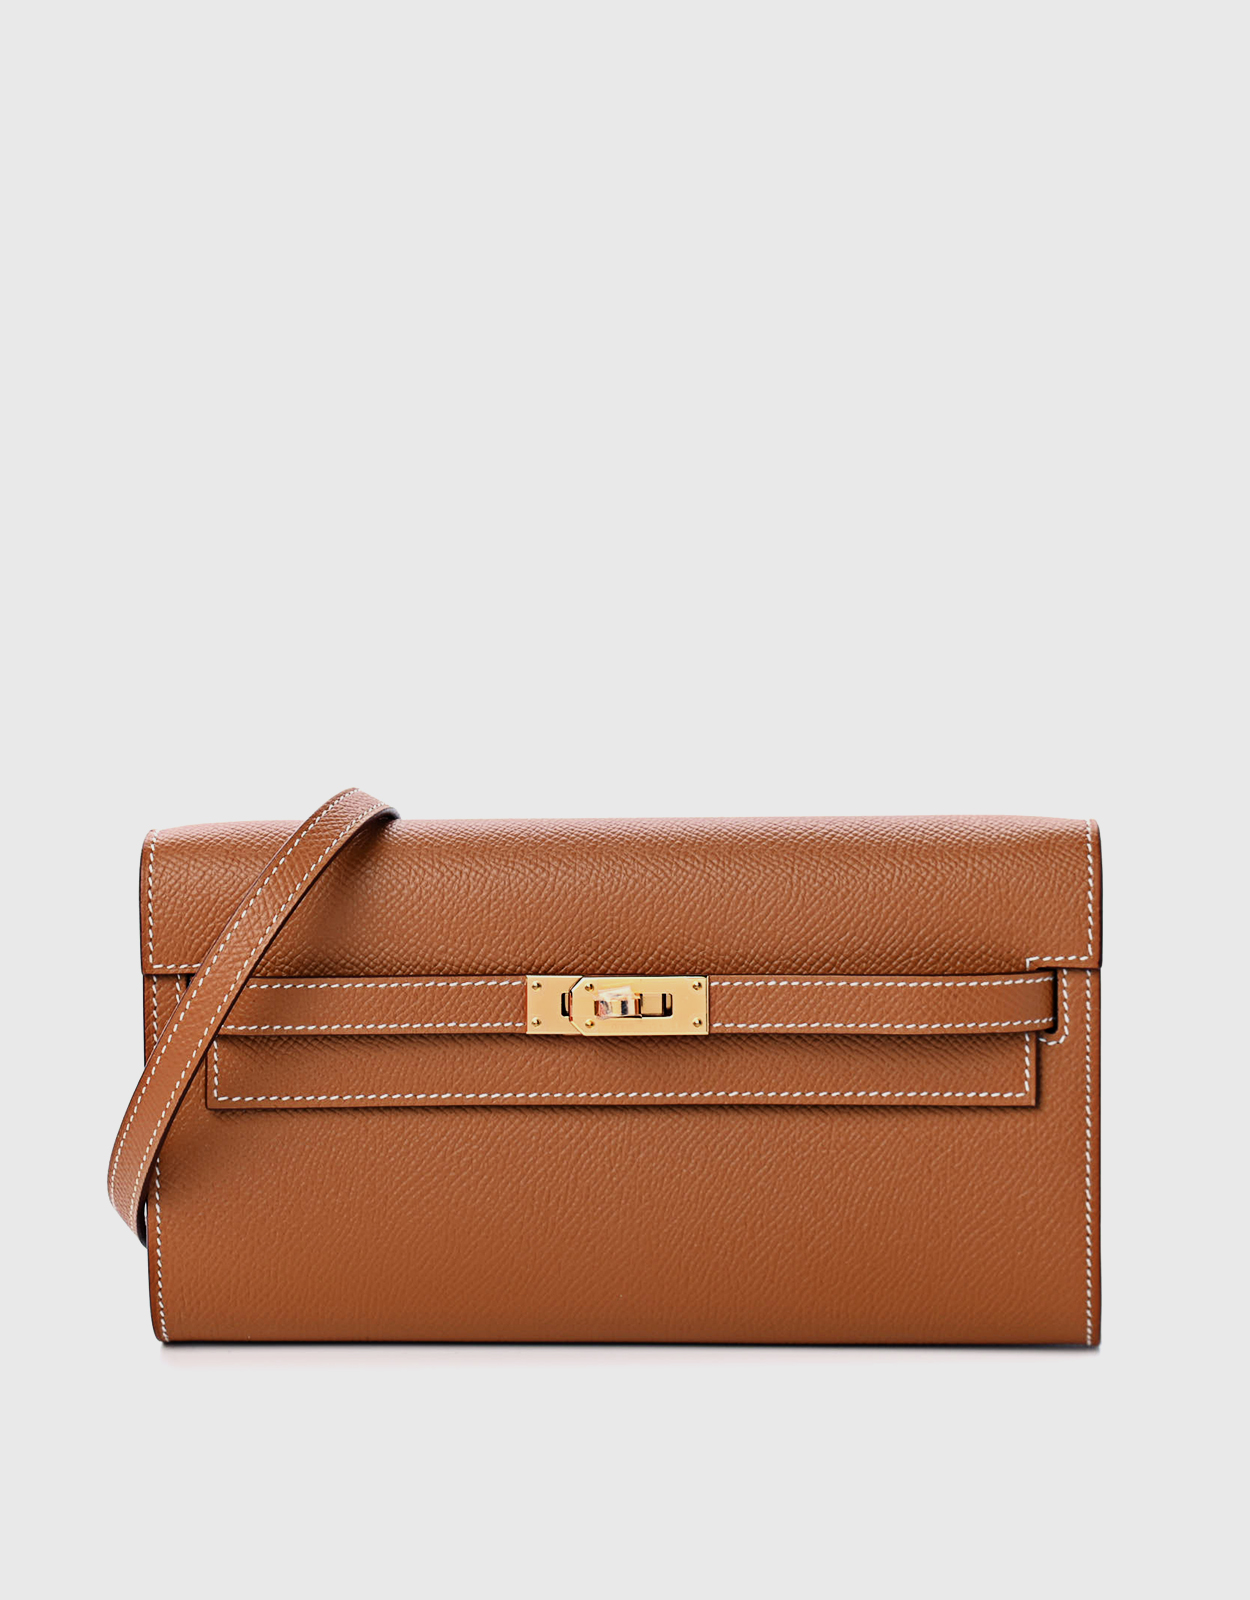 Hermès - Hermès Kelly to Go Epsom Leather Long Wallet Shoulder Bag-Gold Gold Hardware